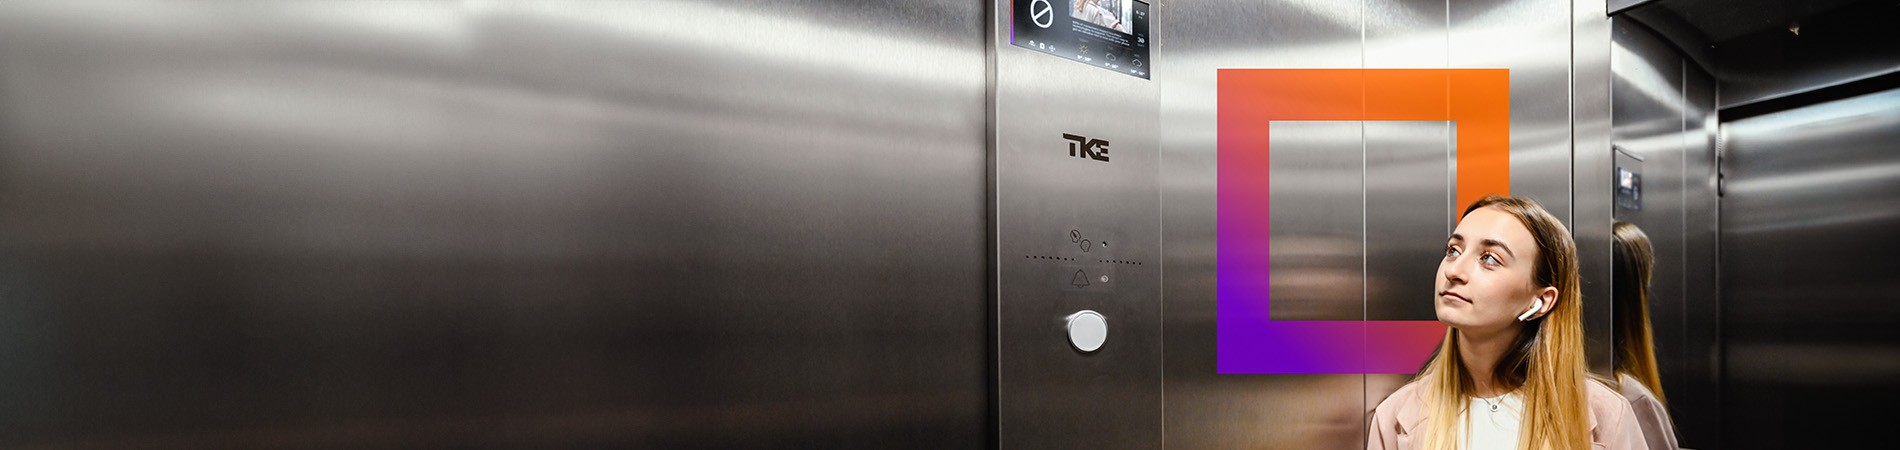 
		Un ascensore eco-efficiente e ultra-digitale
